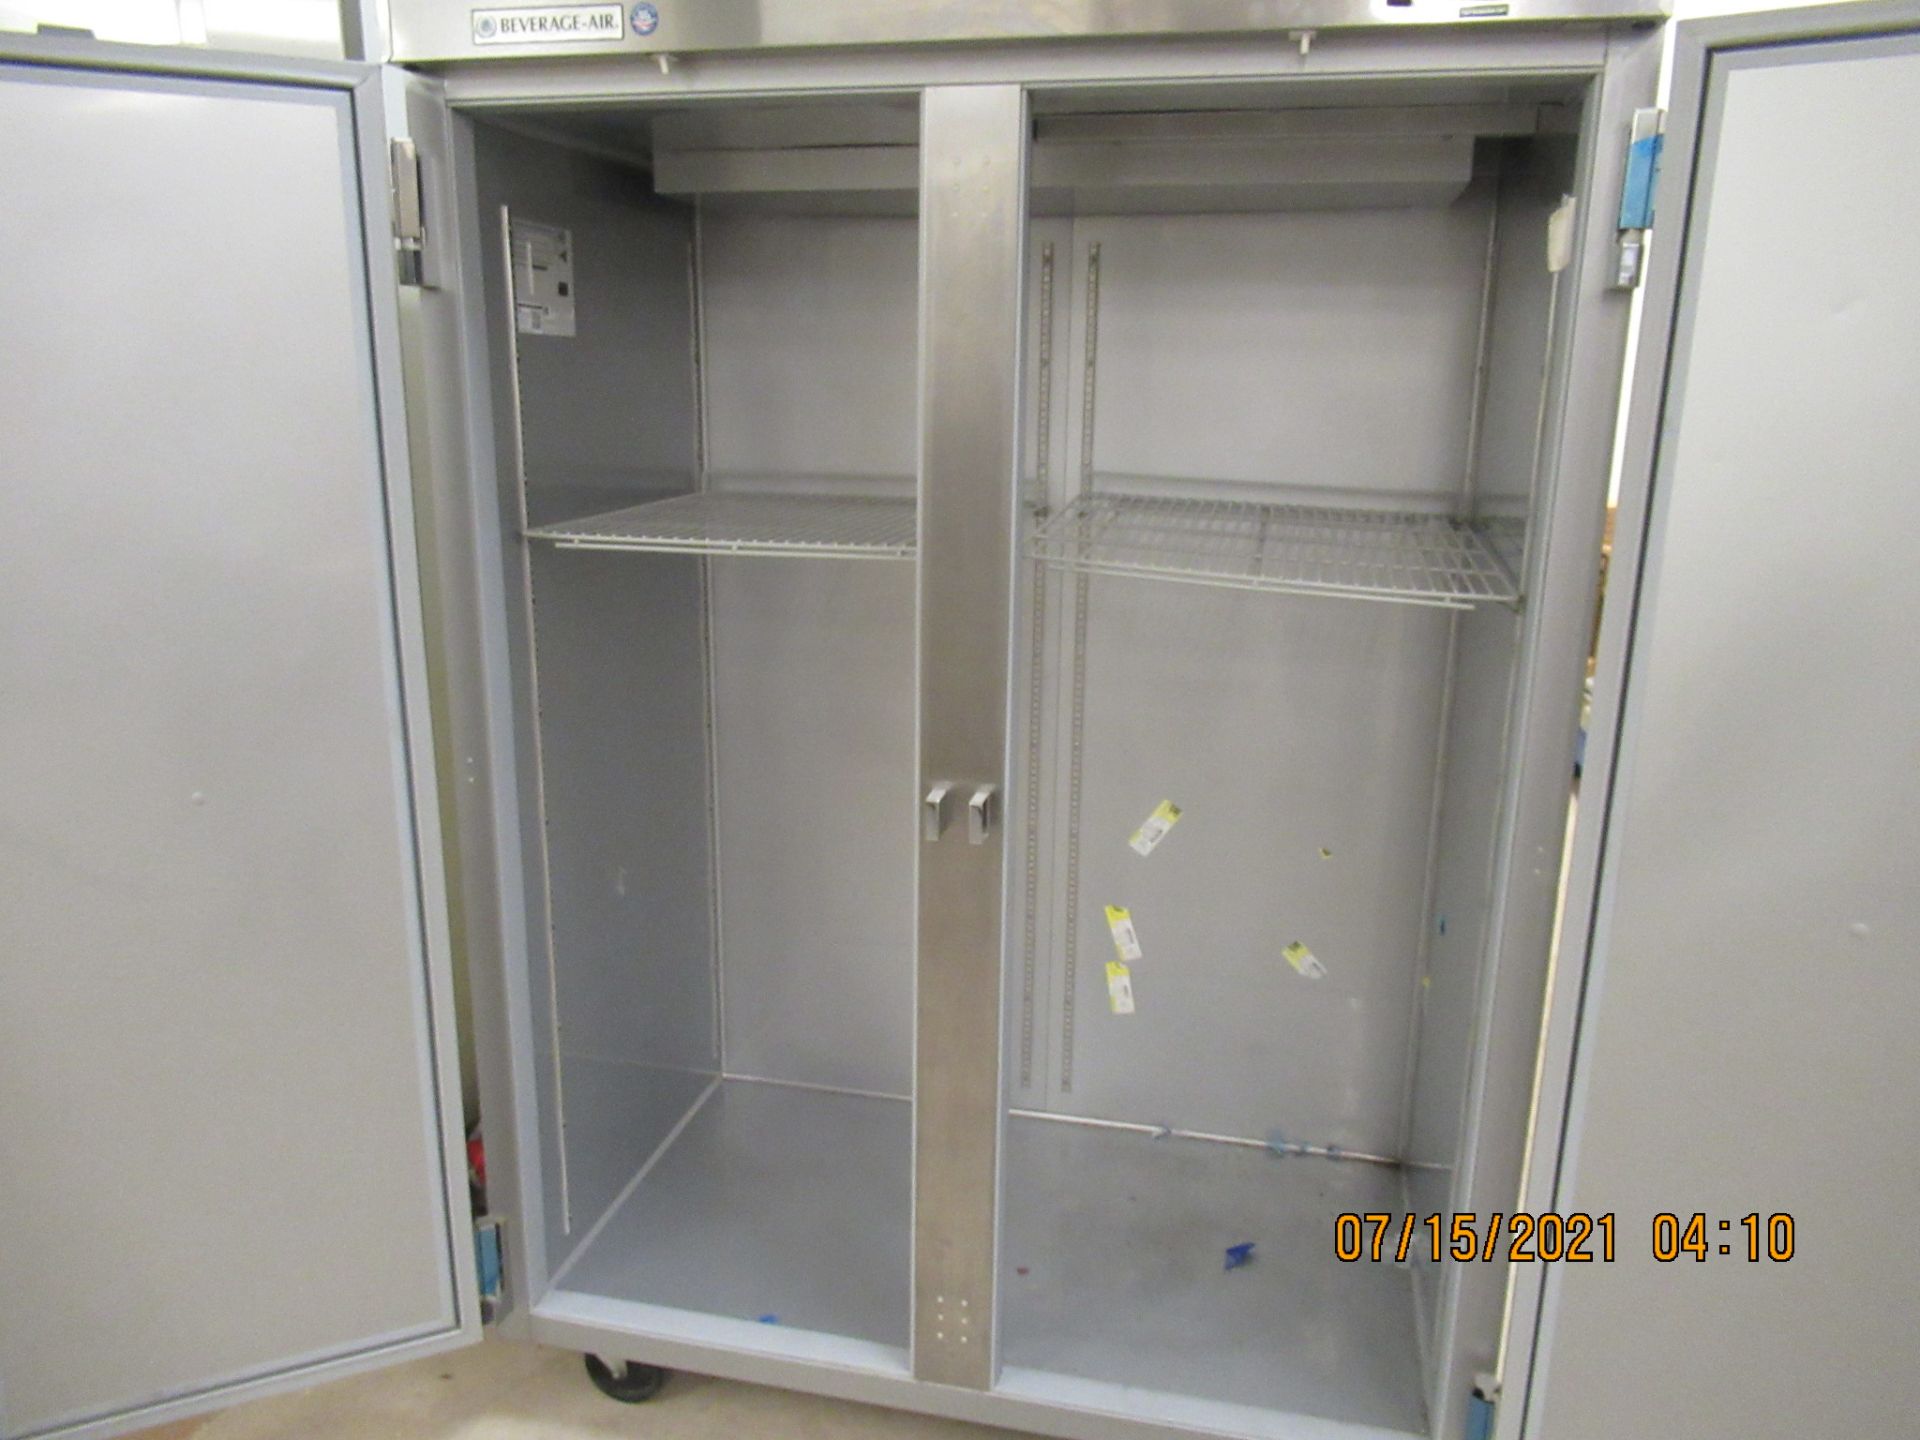 Refrigerator - Image 2 of 2